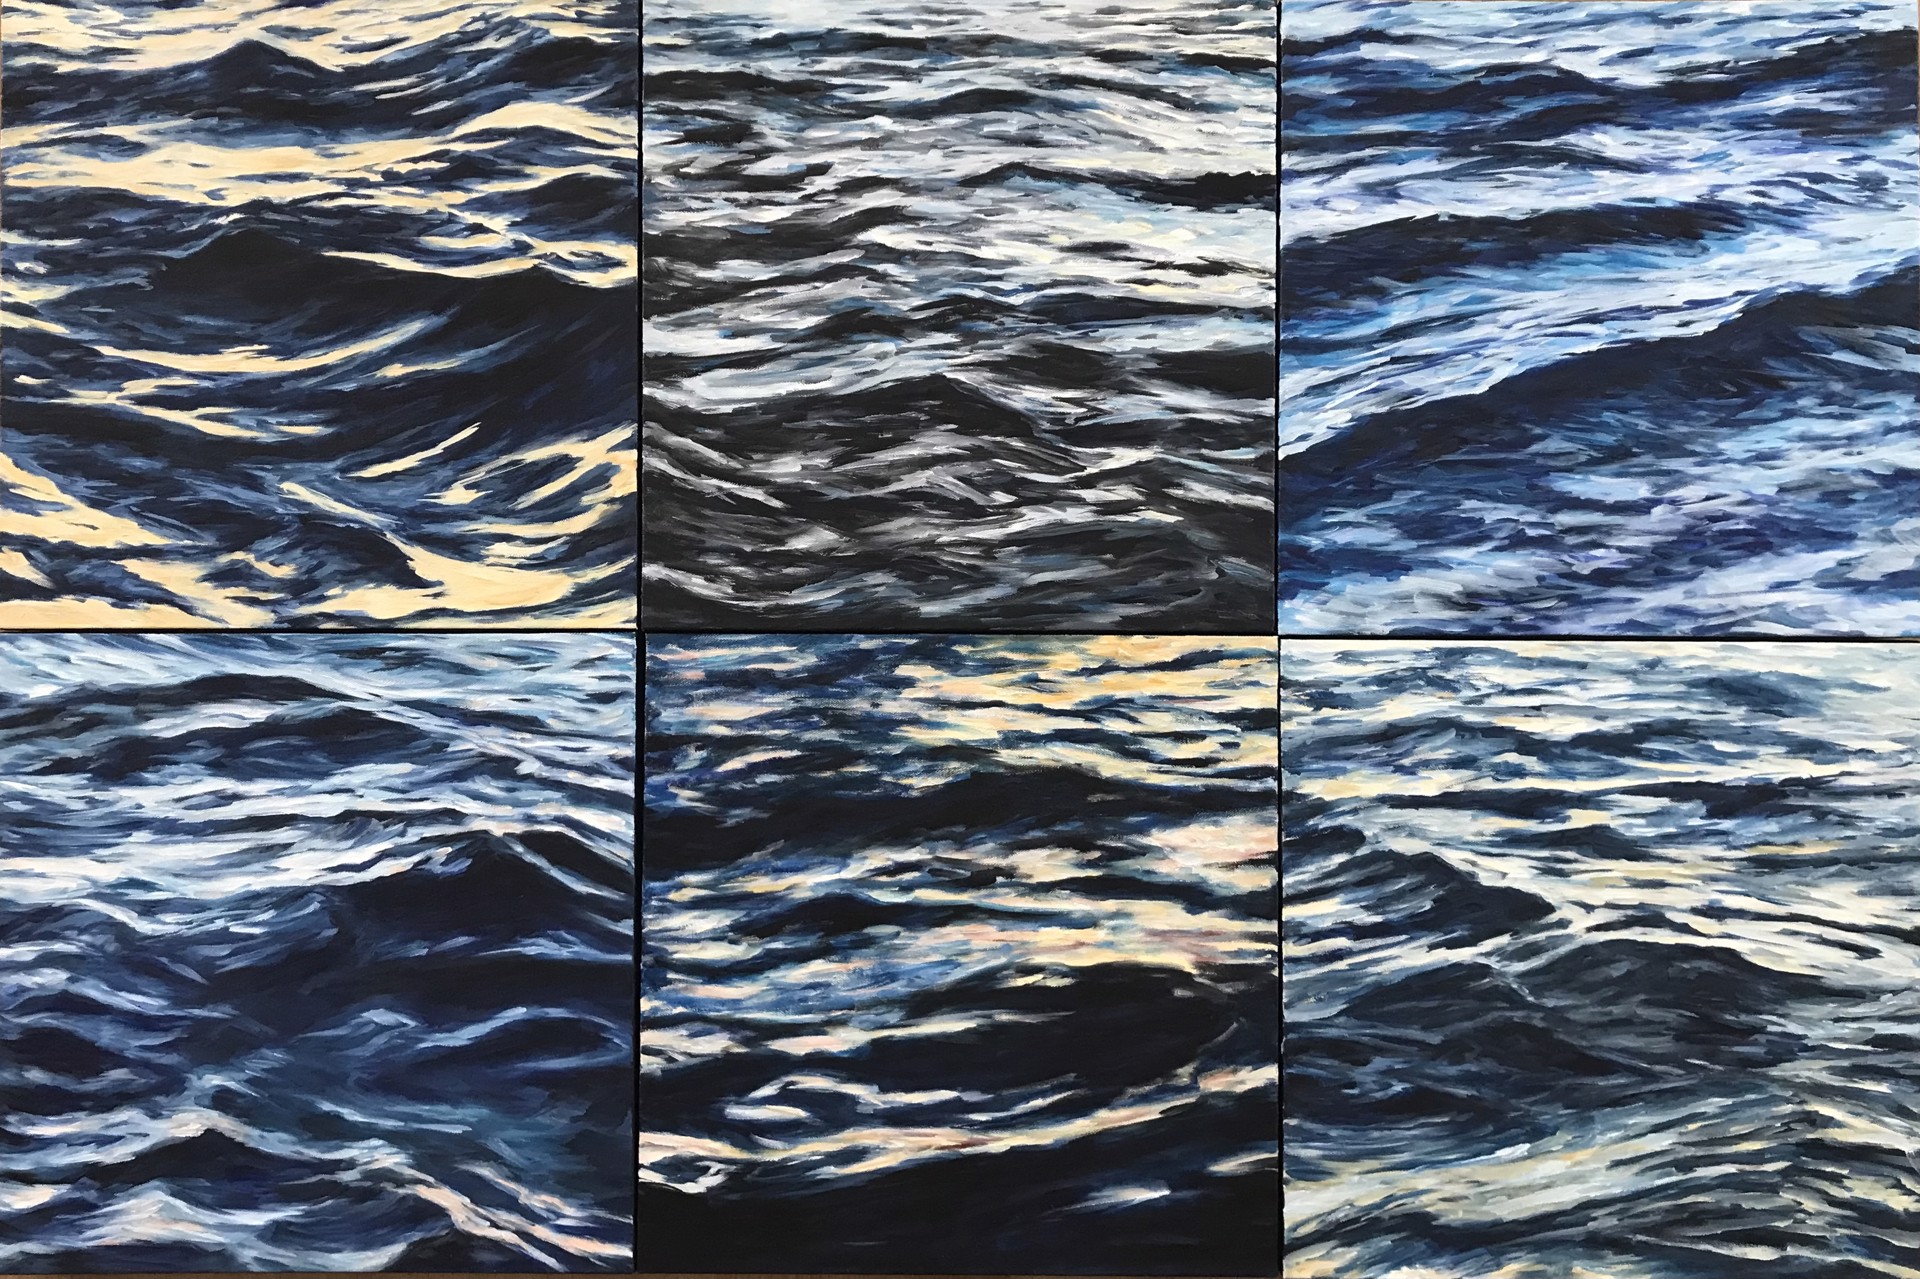 Lahaina Waves 7 by Valerie Eickmeier